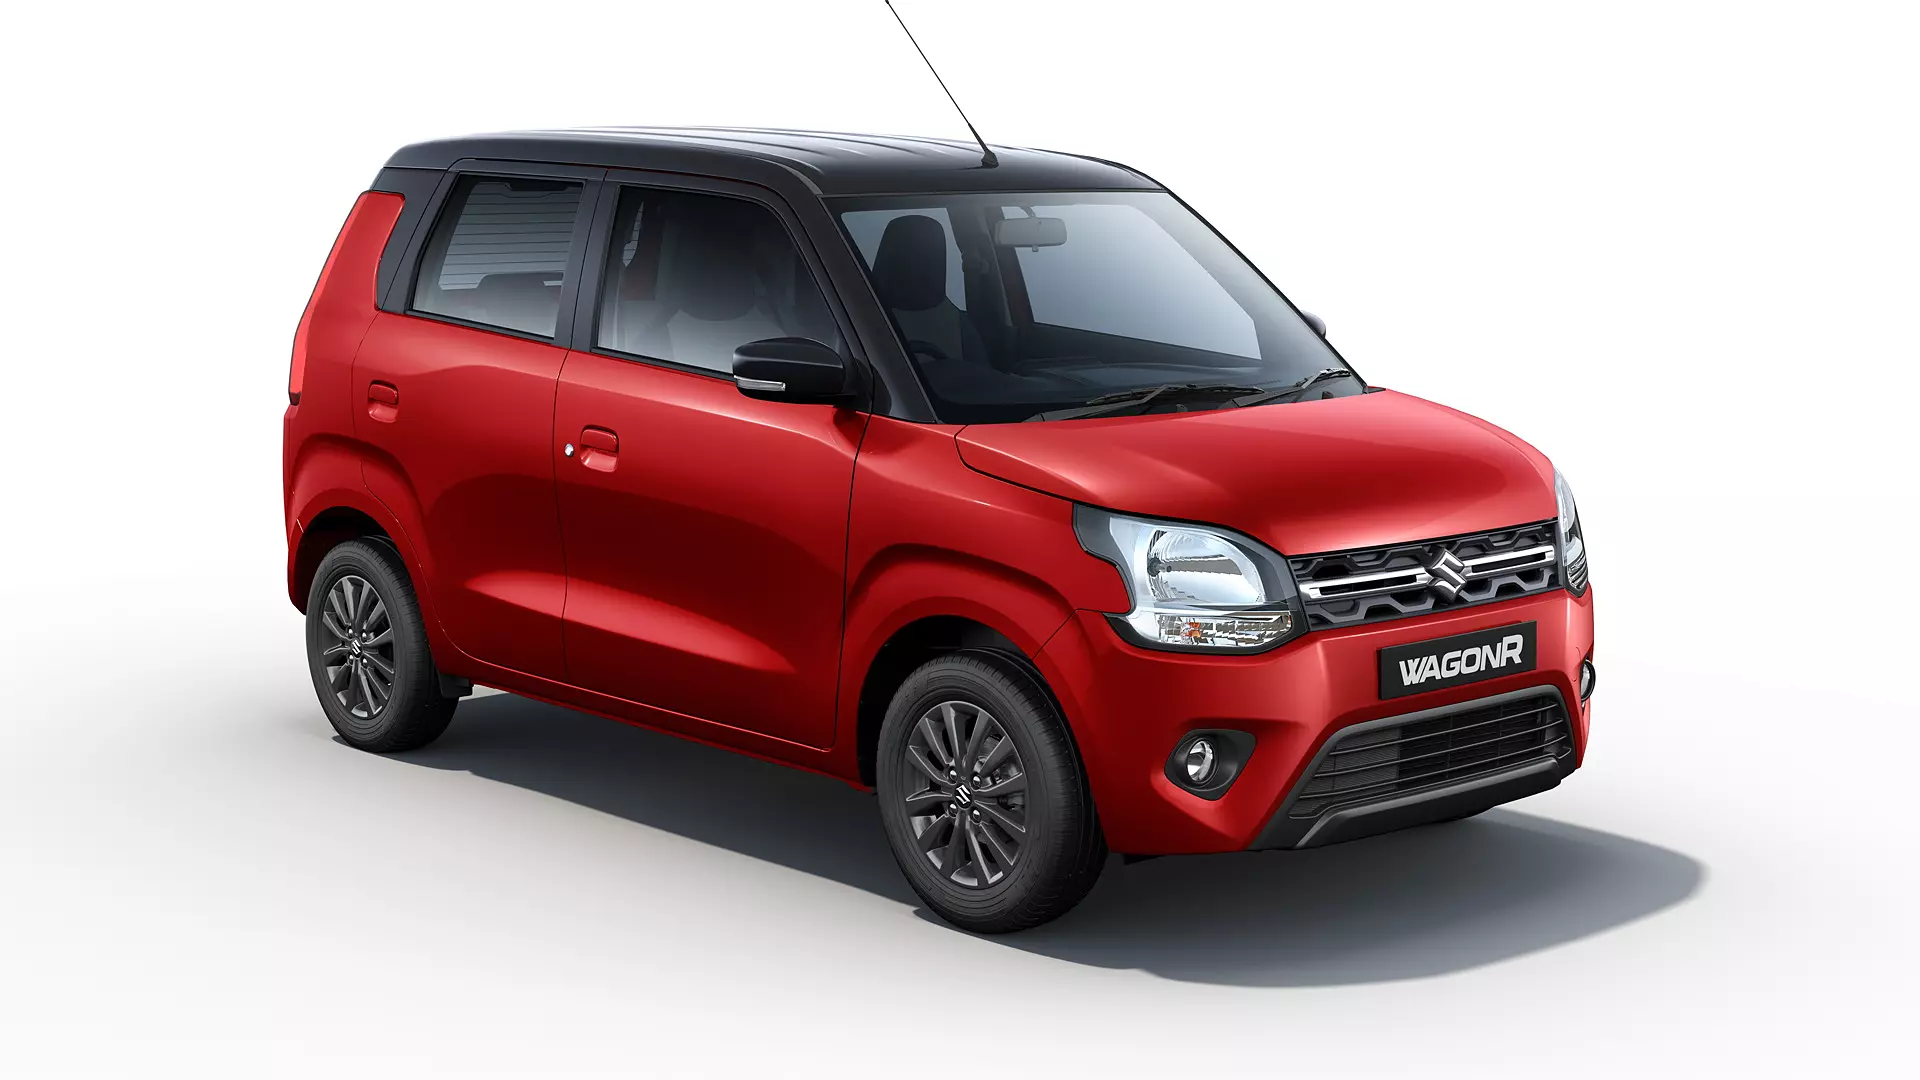 Wagon R - Self Drive Car Rental in Delhi